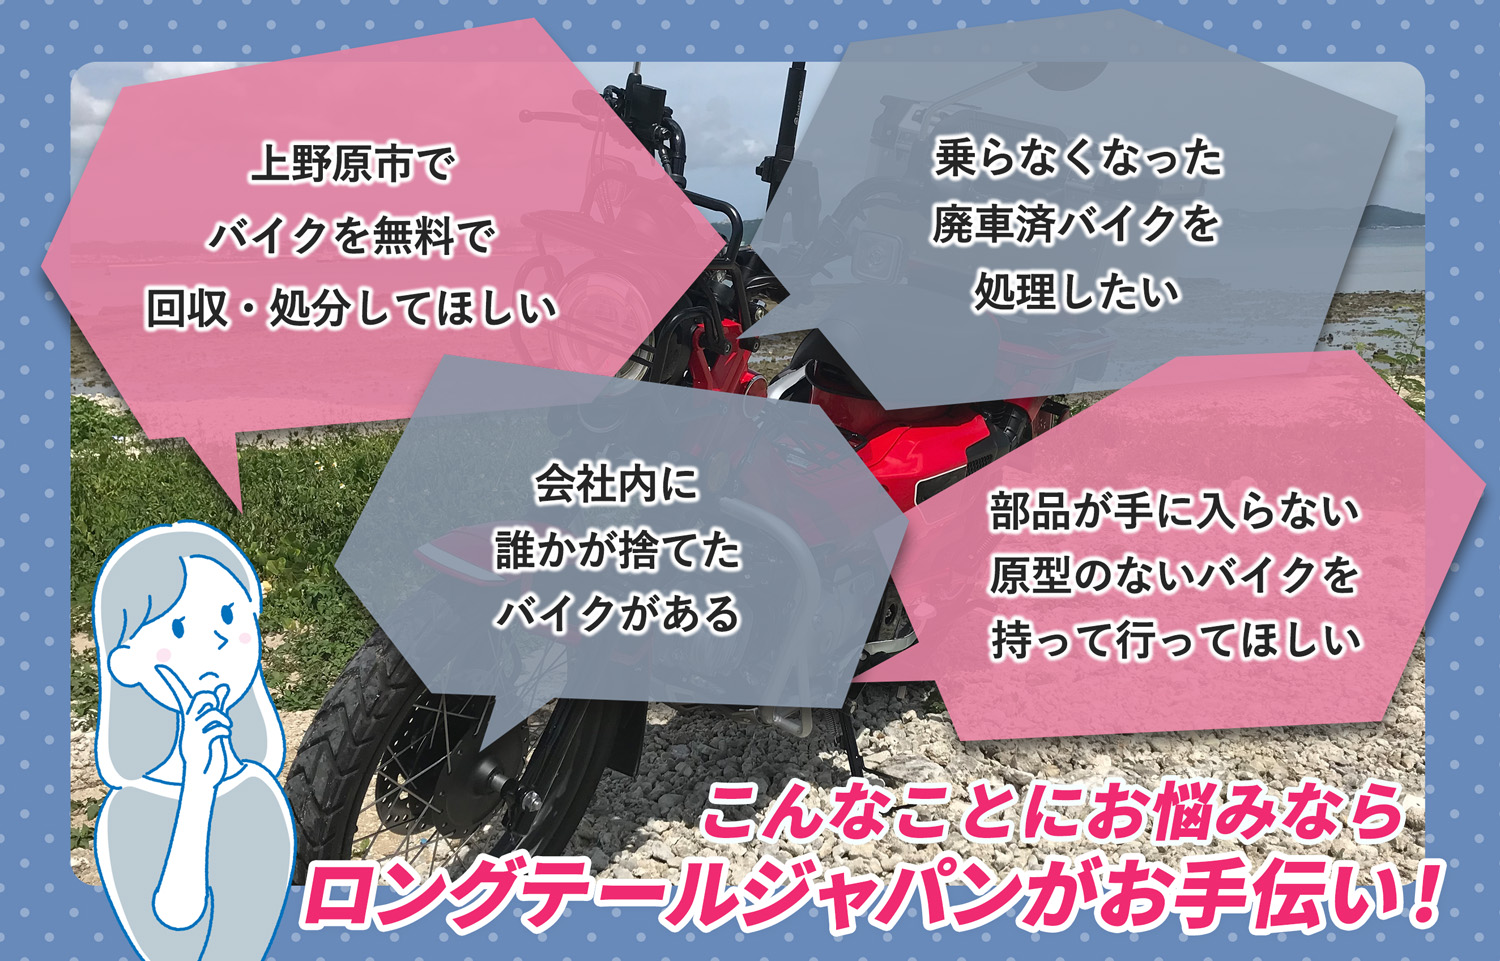 上野原市でこんなバイクの処分にお困りでしたらバイク無料回収処分隊がお手伝いいたします。